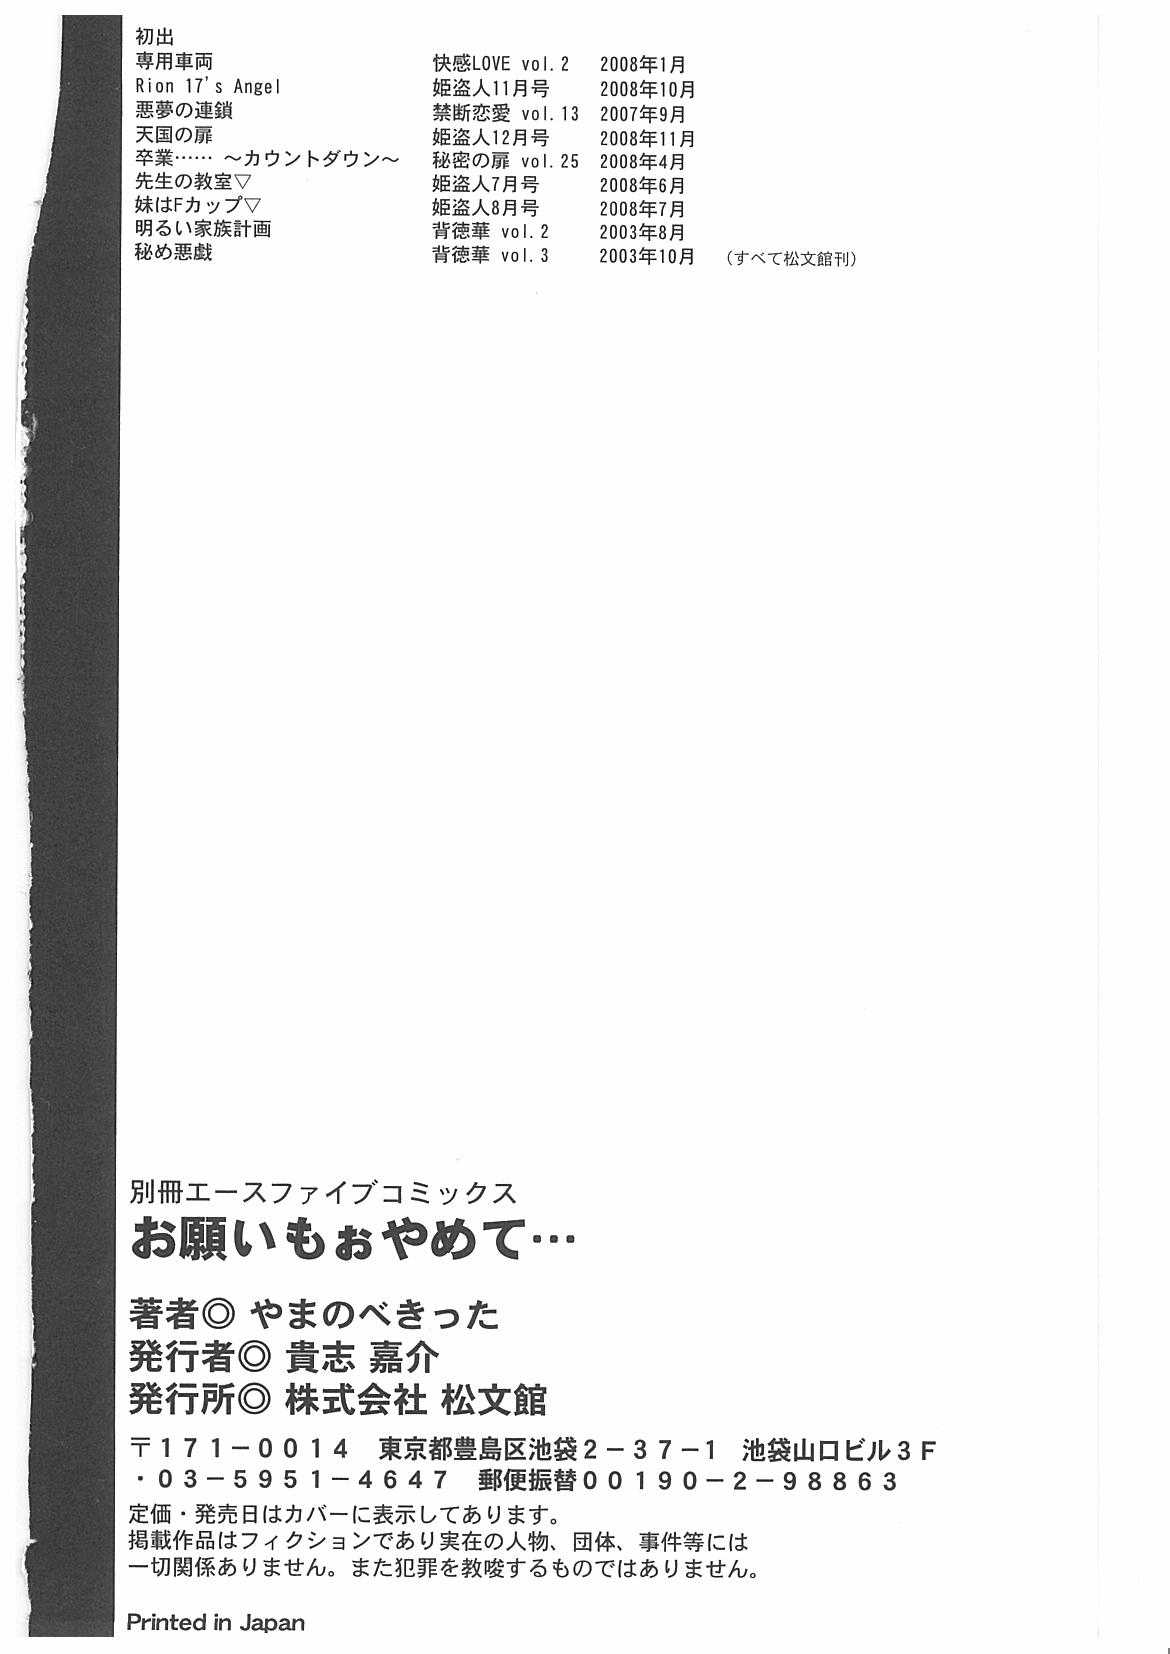 [Yamanobe Kitta] Onegai Mooyamete... [やまのべきった] お願い もぉやめて・・・[09-2-25]